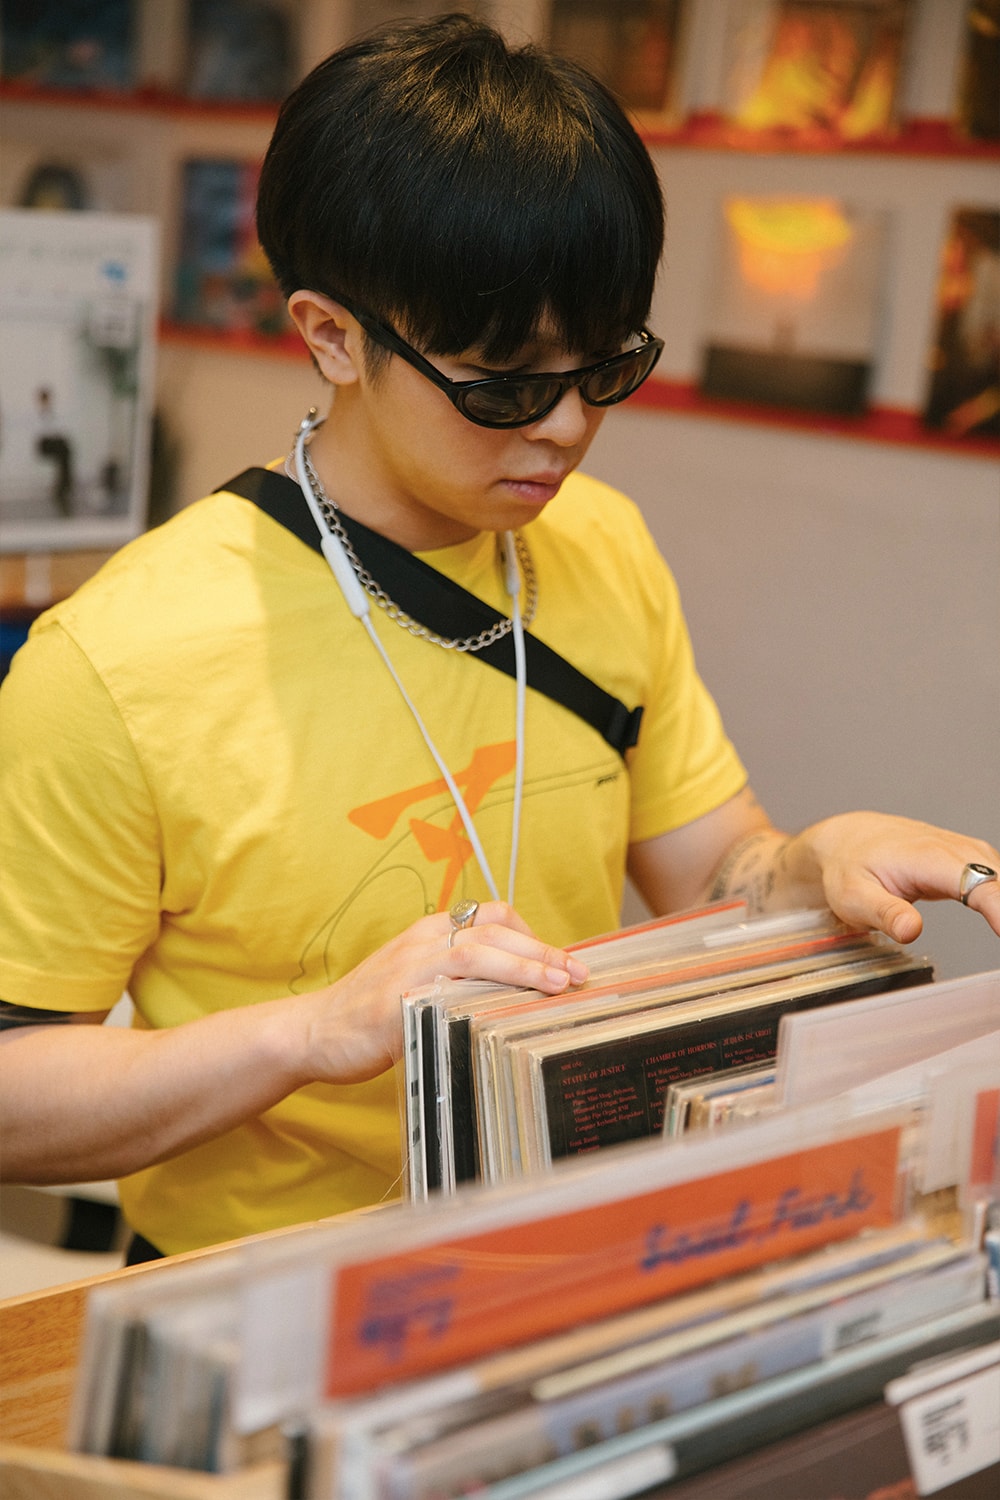 留学归来的年轻音乐人，带给川渝 Hip-hop 以怎样的改变？